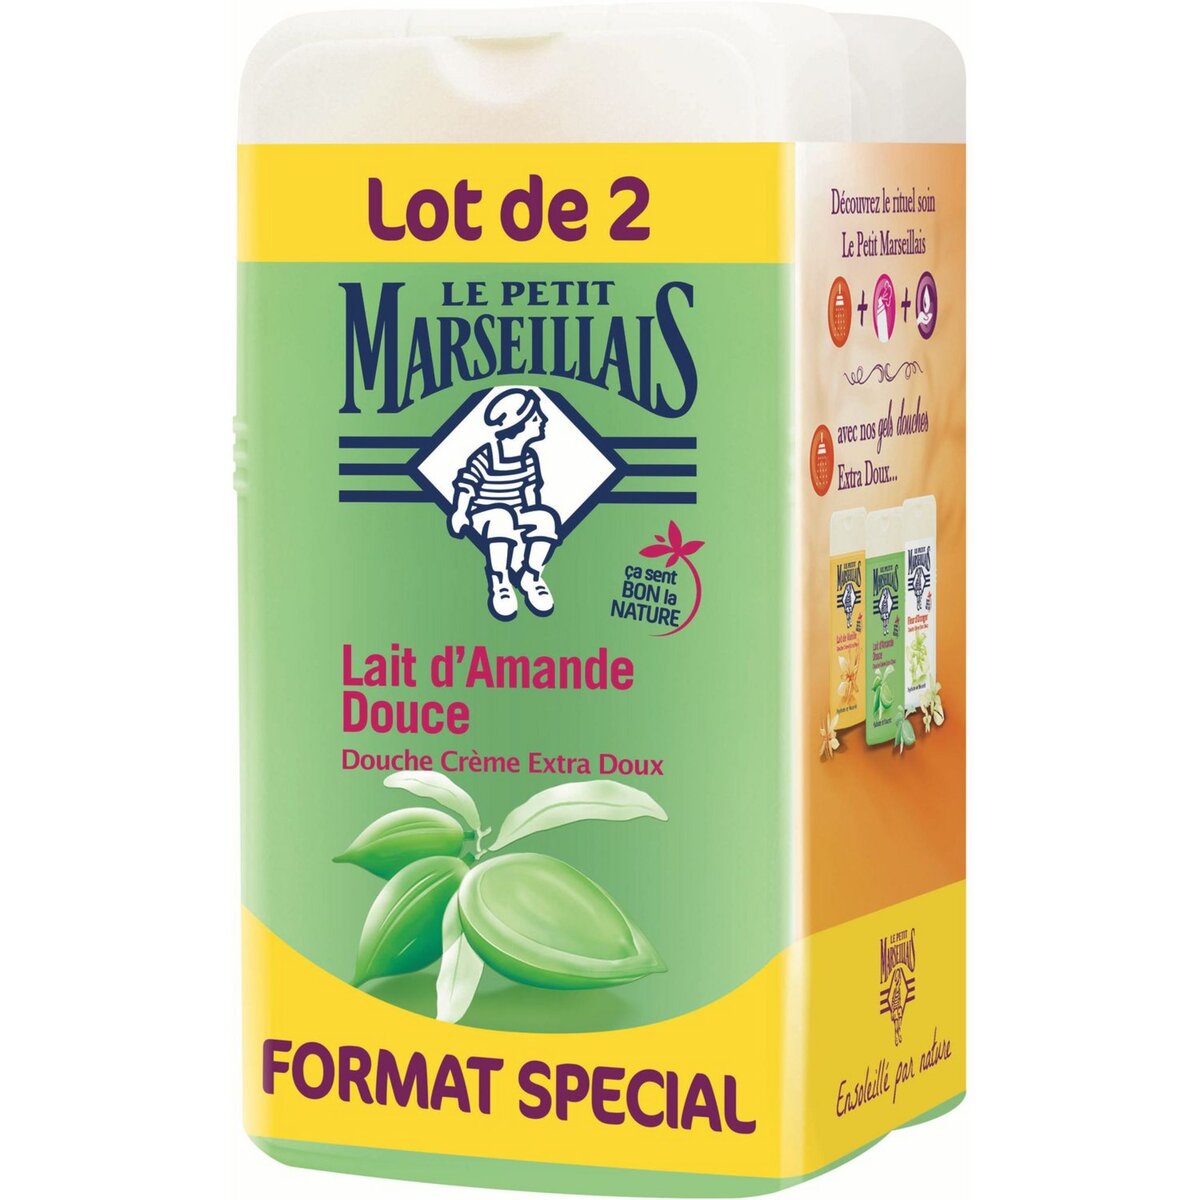 LE PETIT MARSEILLAIS Le Petit Marseillais gel douche lait d'amande douce 2x250ml